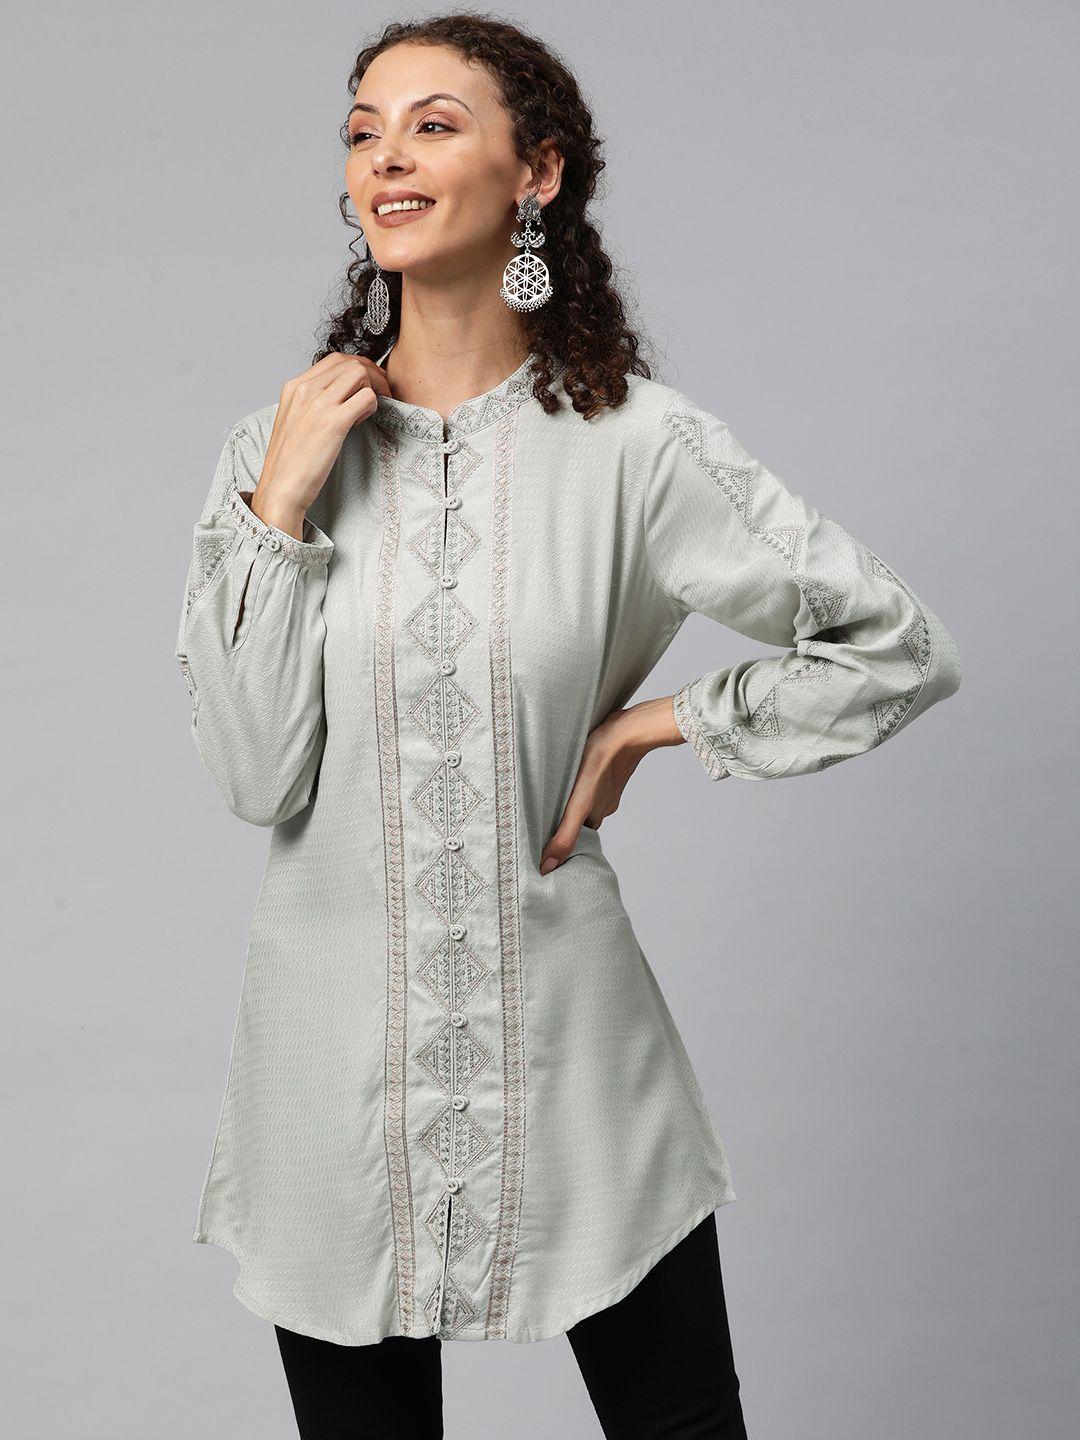 readiprint fashions geometric embroidered shirt style kurti